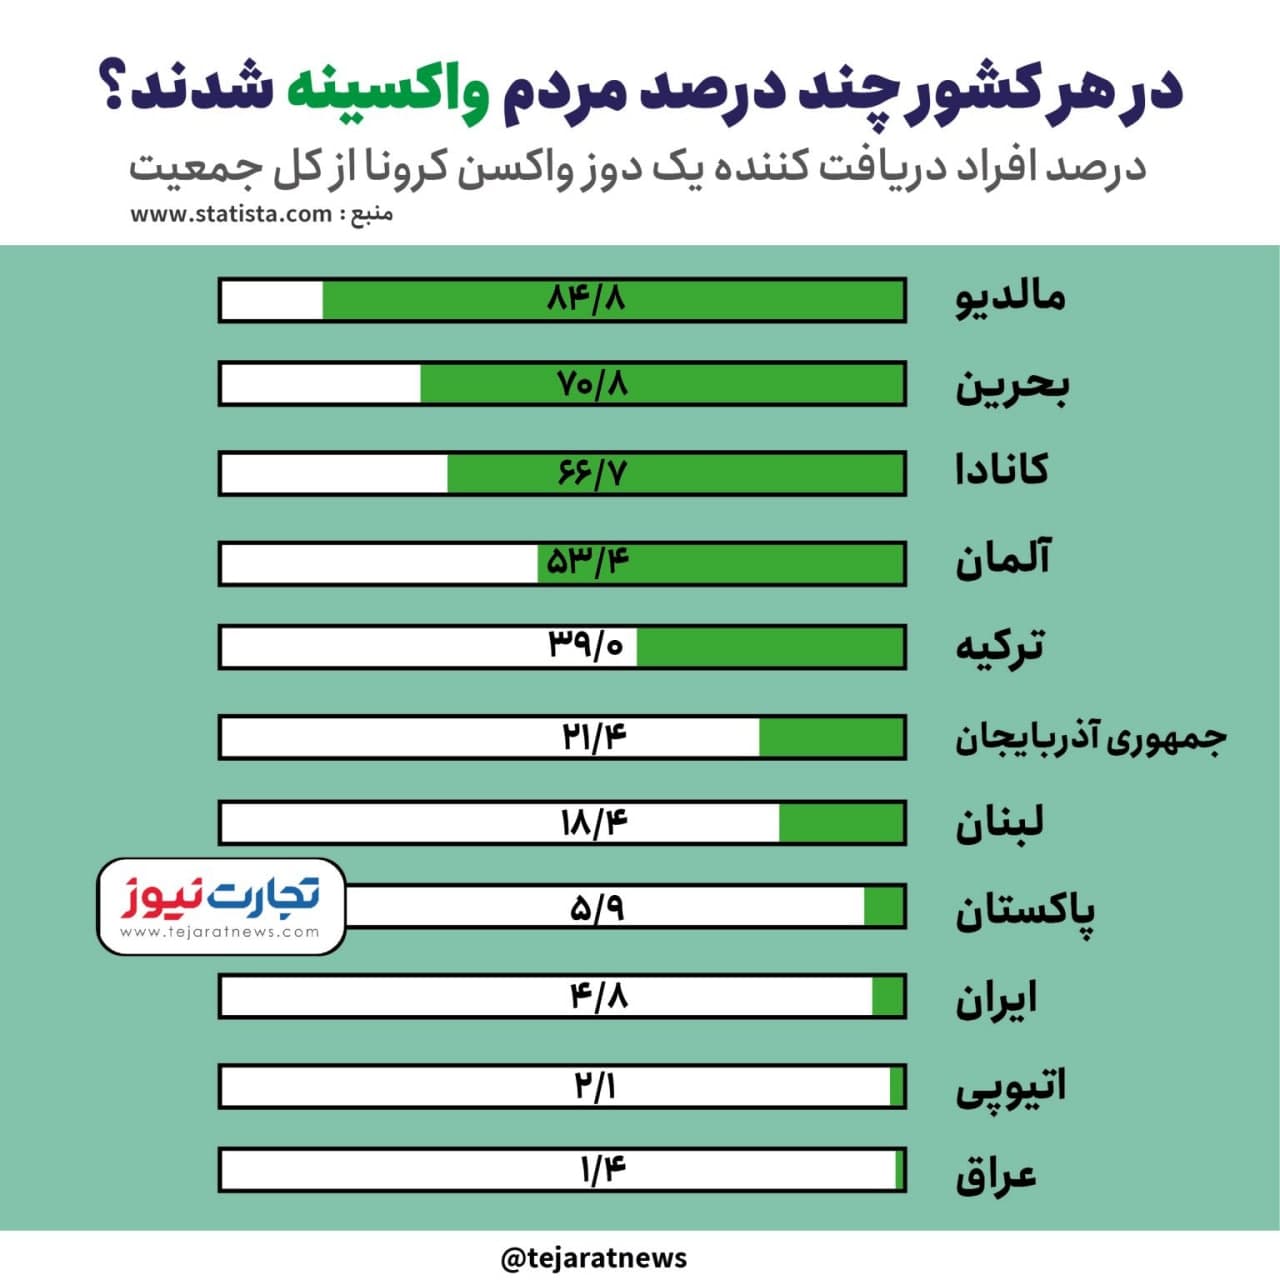 واکسیناسیون لبنان و پاکستان از ایران پیش افتاد! + جدول